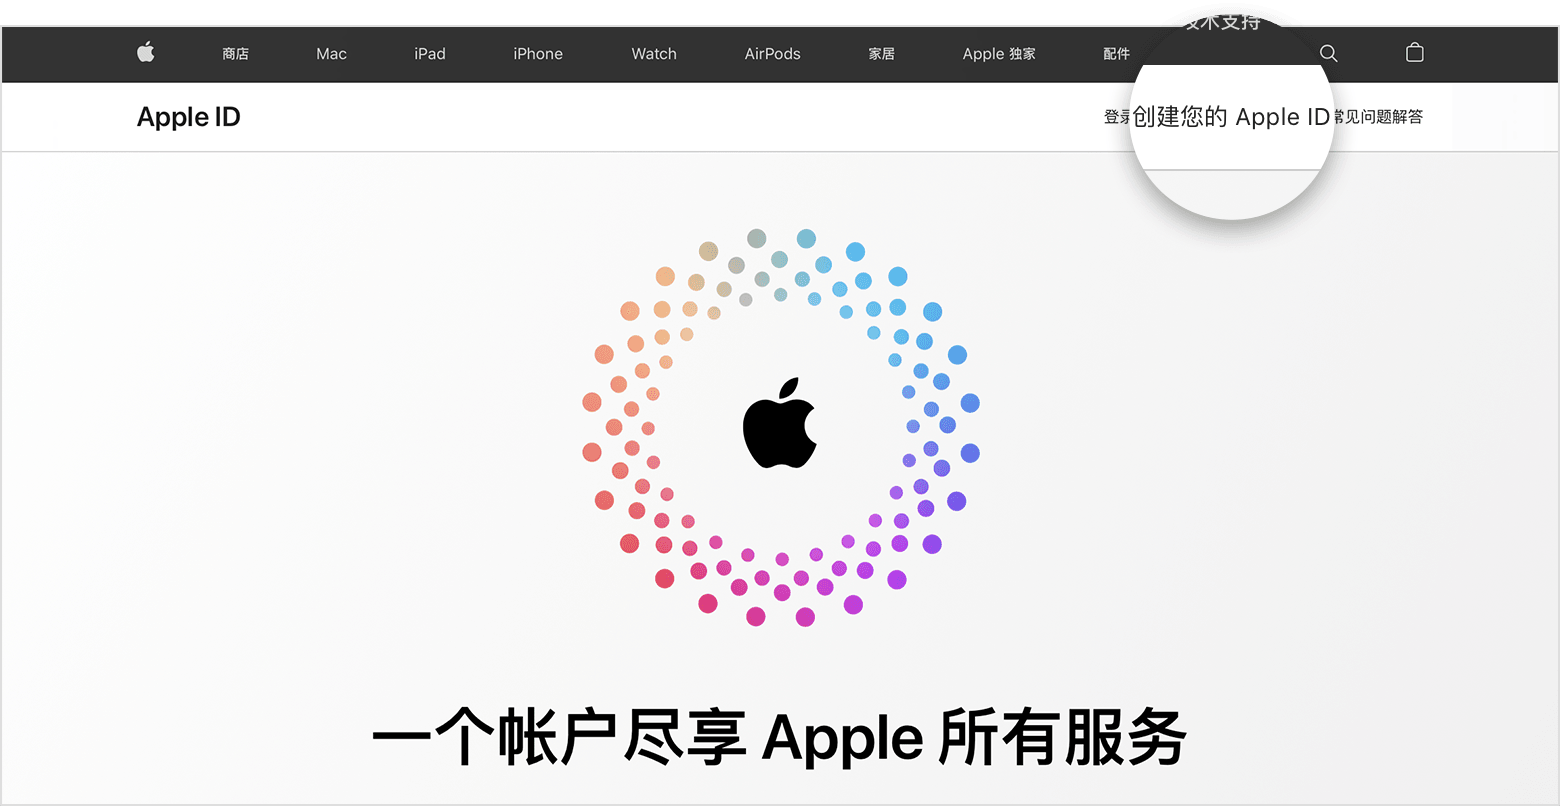 appleid.apple.com 的截屏，屏幕中央是 Apple 的标志，周围环绕着同心彩色圆圈。